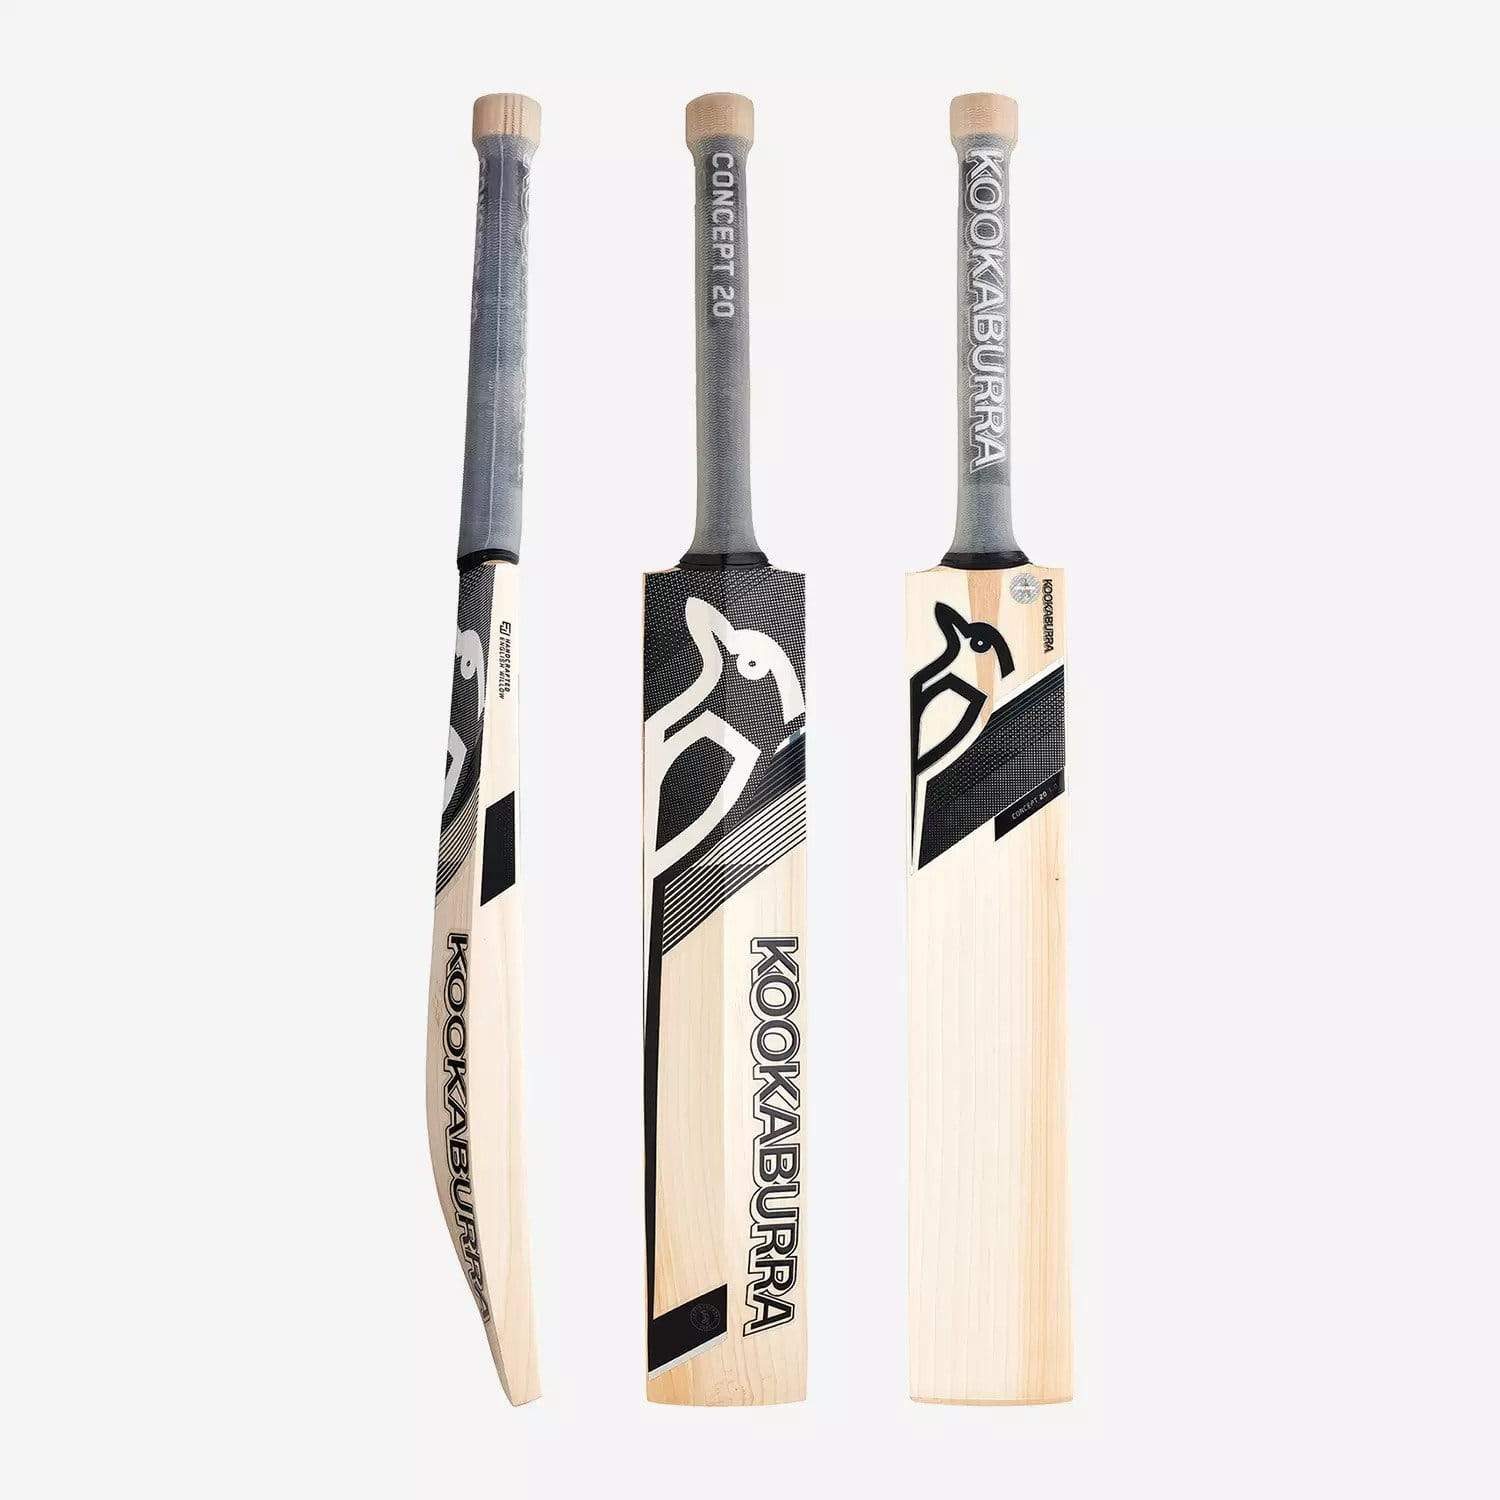 Kookaburra Cricket Bats Short Hand / 2lbs 7oz - 2lbs 10oz Kookaburra Concept 20 Pro 1.0 Adult Cricket Bat